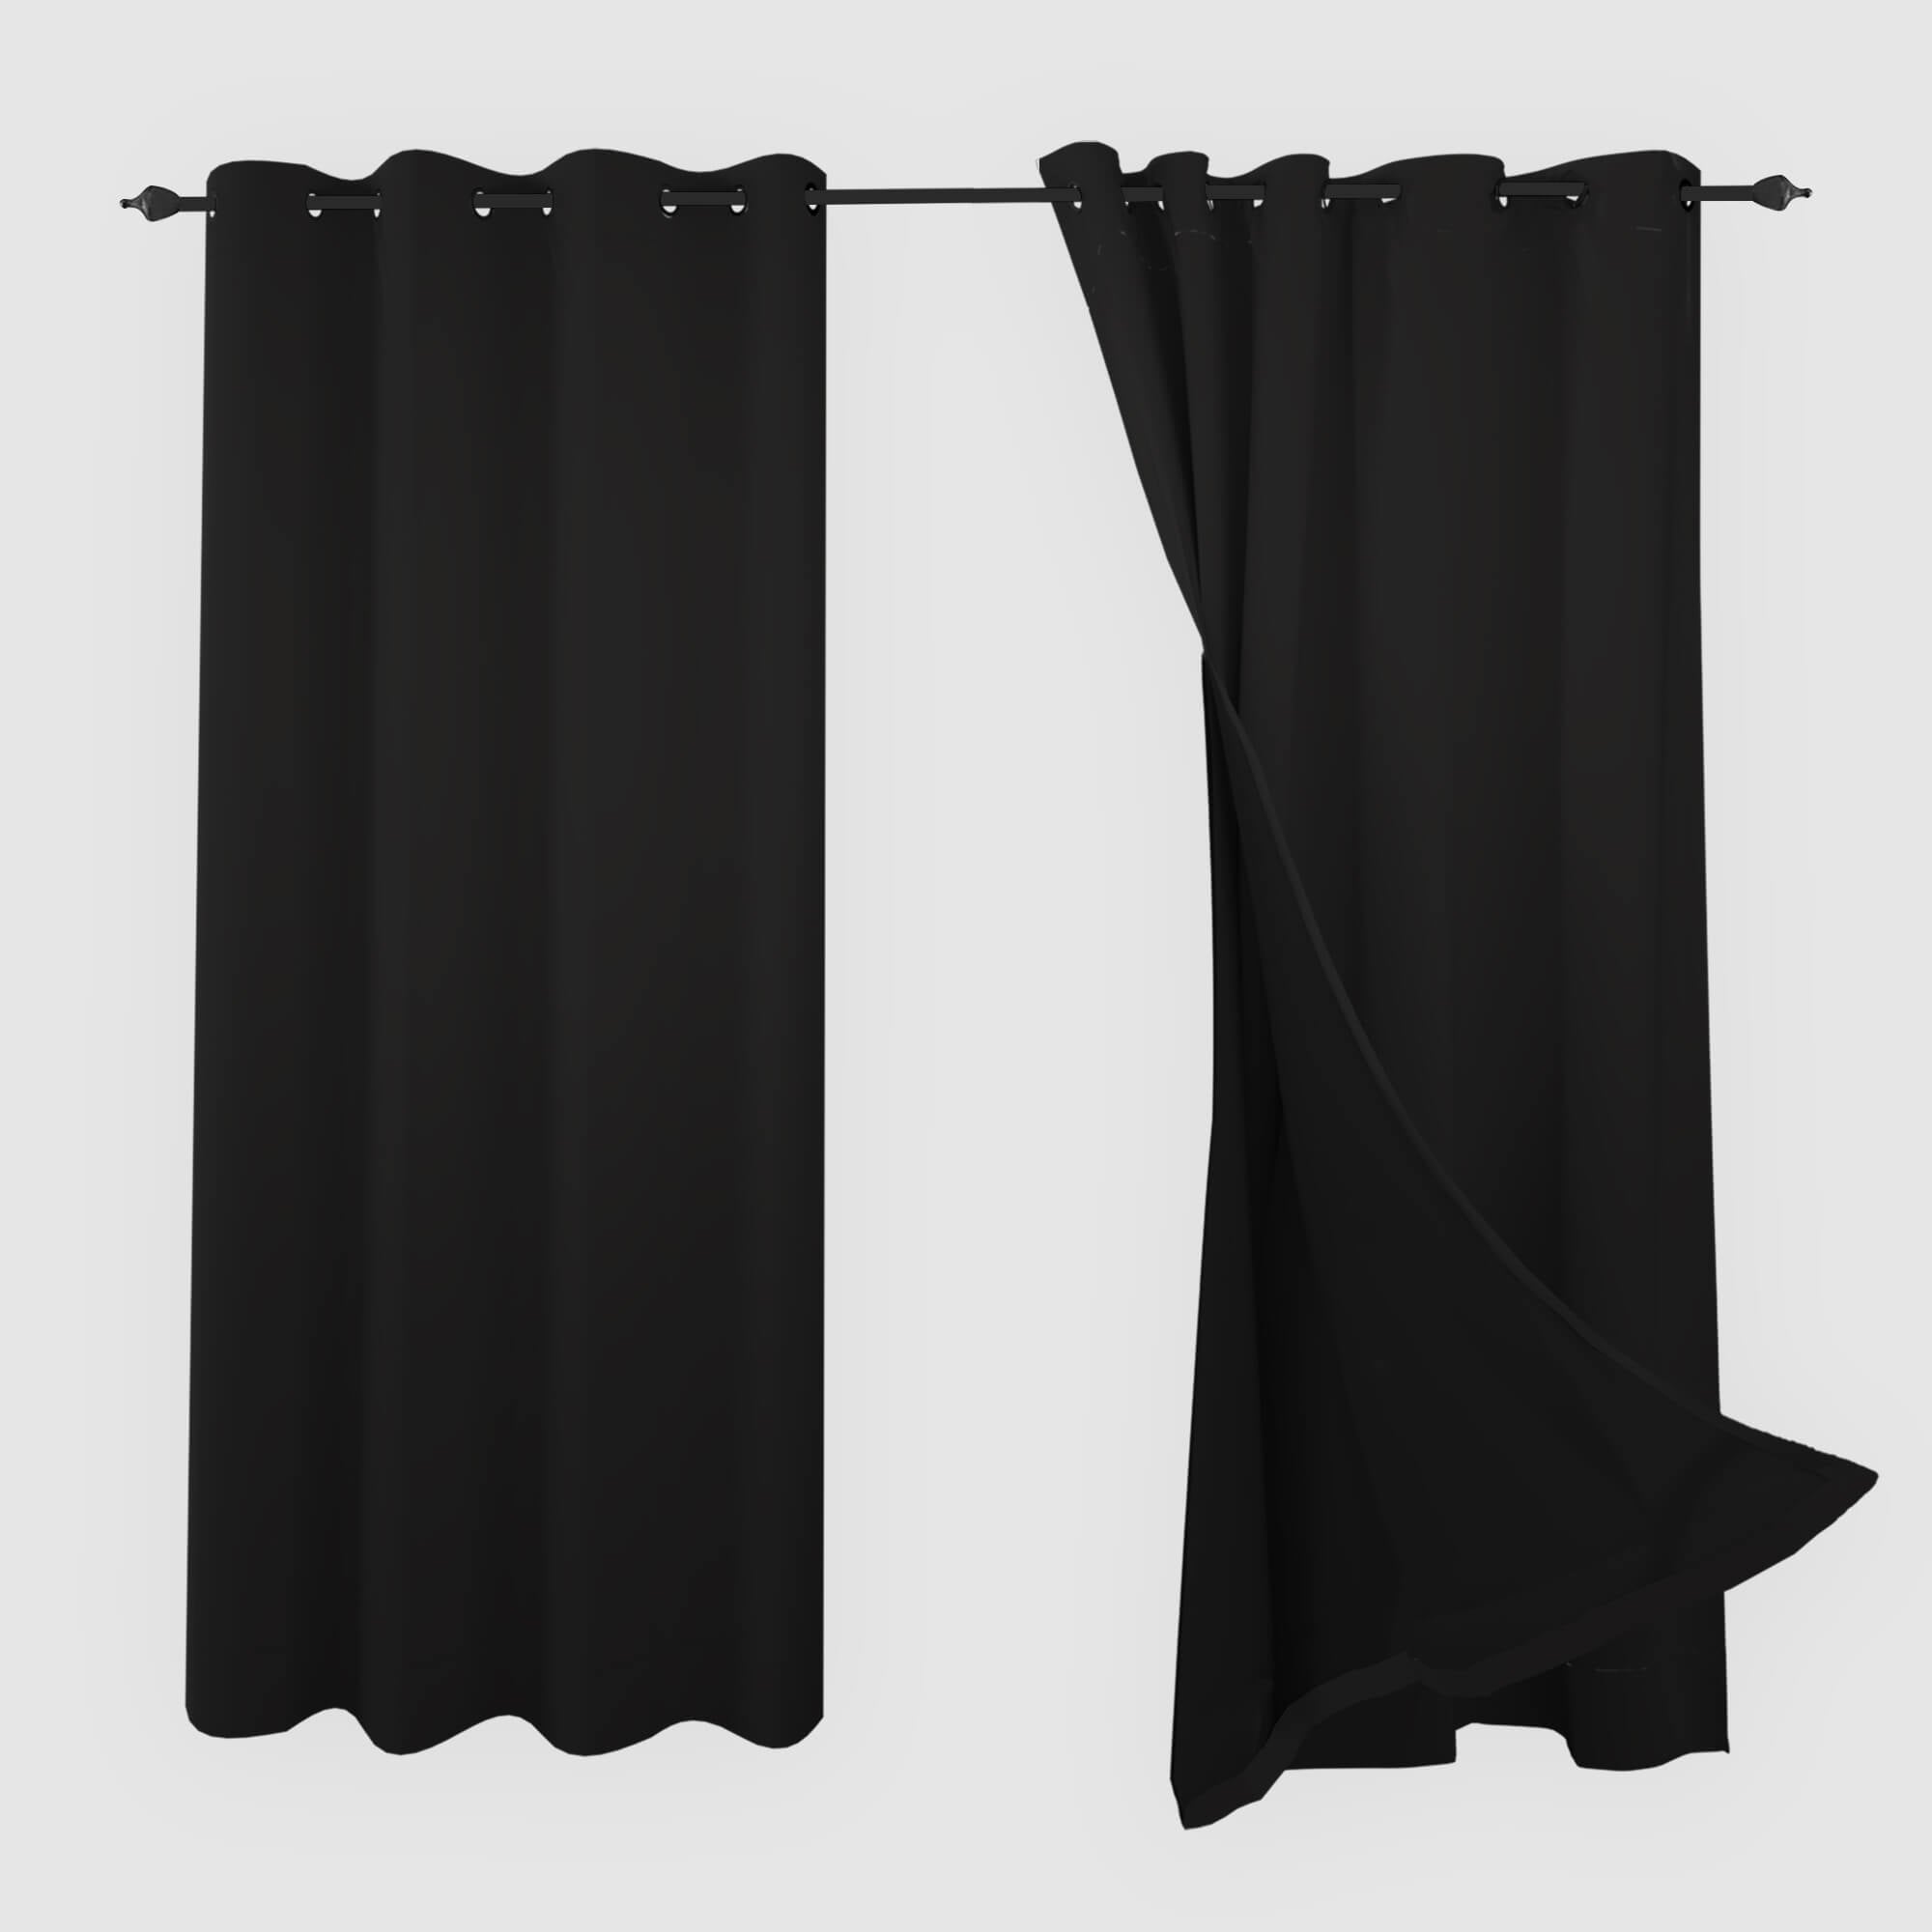 SNOWCITY Blackout Curtains Black - Grommet Top